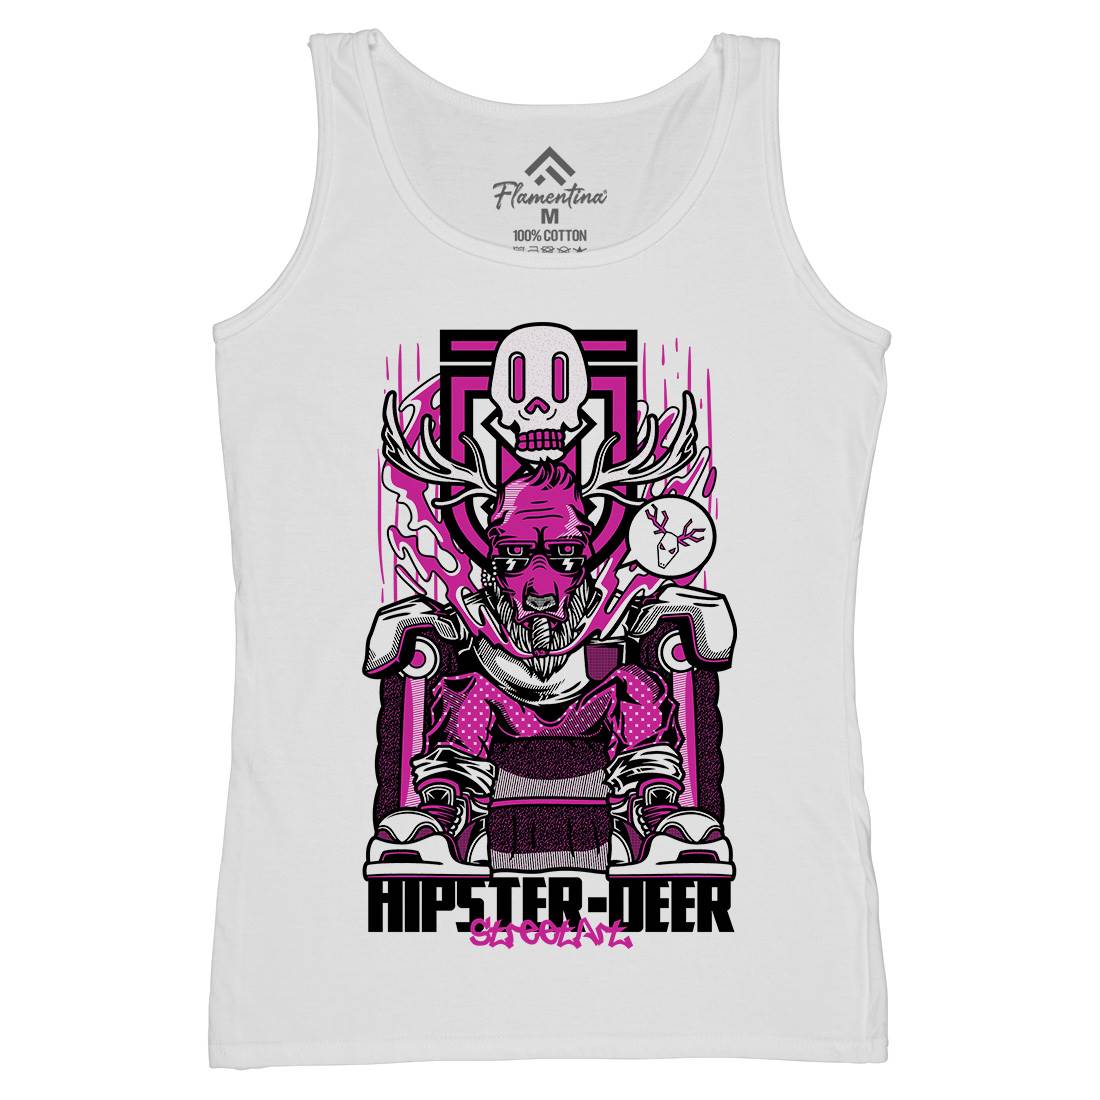 Hipster Deer Womens Organic Tank Top Vest Animals D612